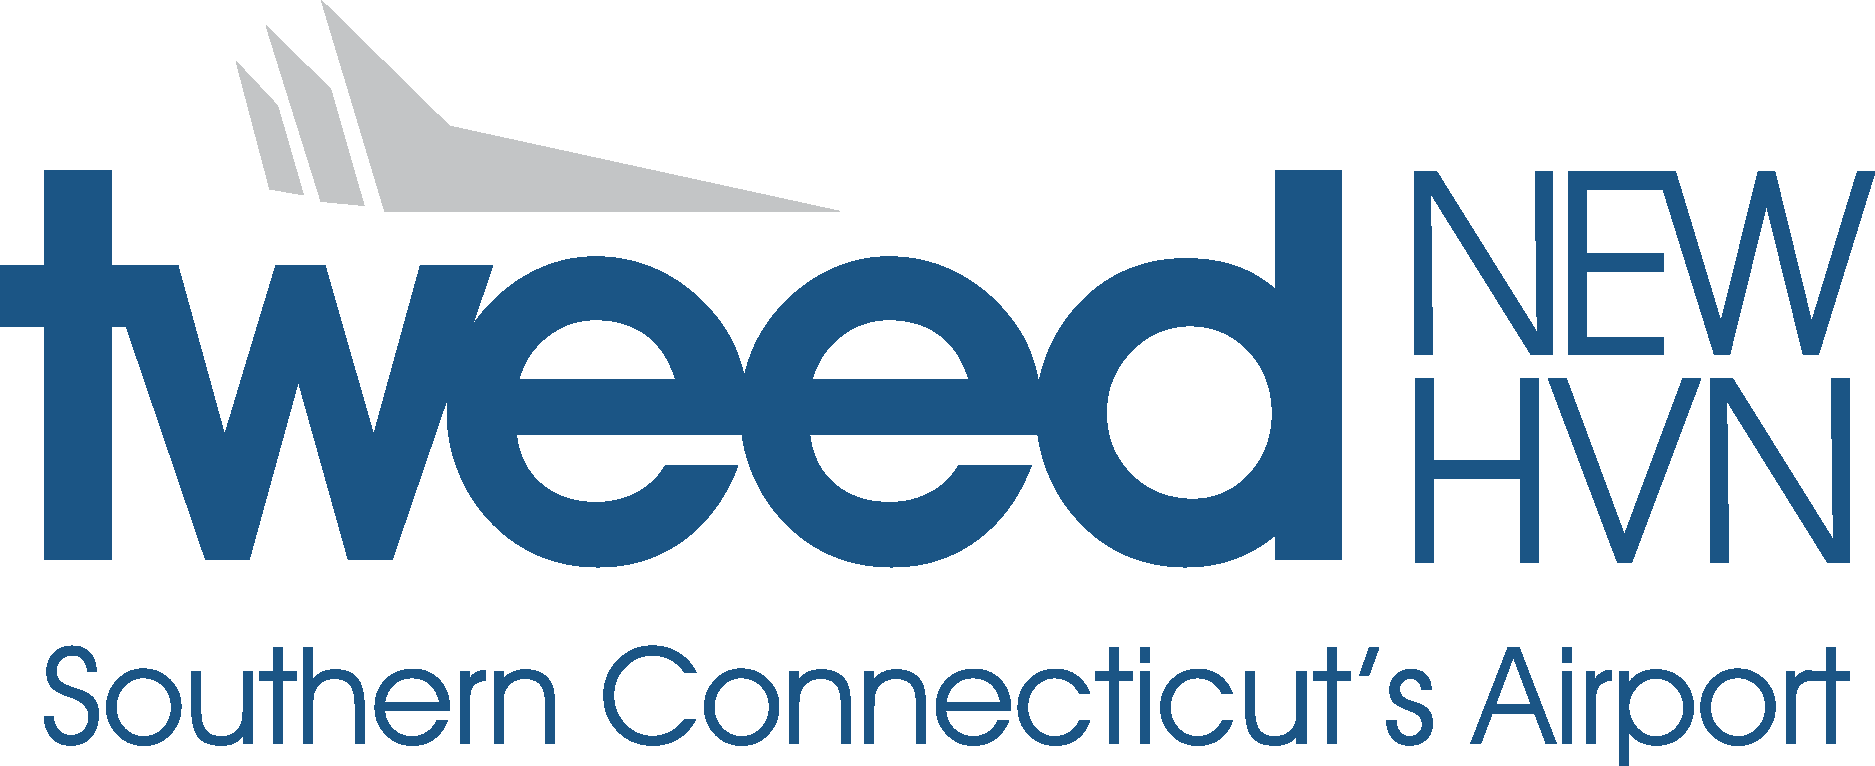 Tweed New Haven Logo Vector